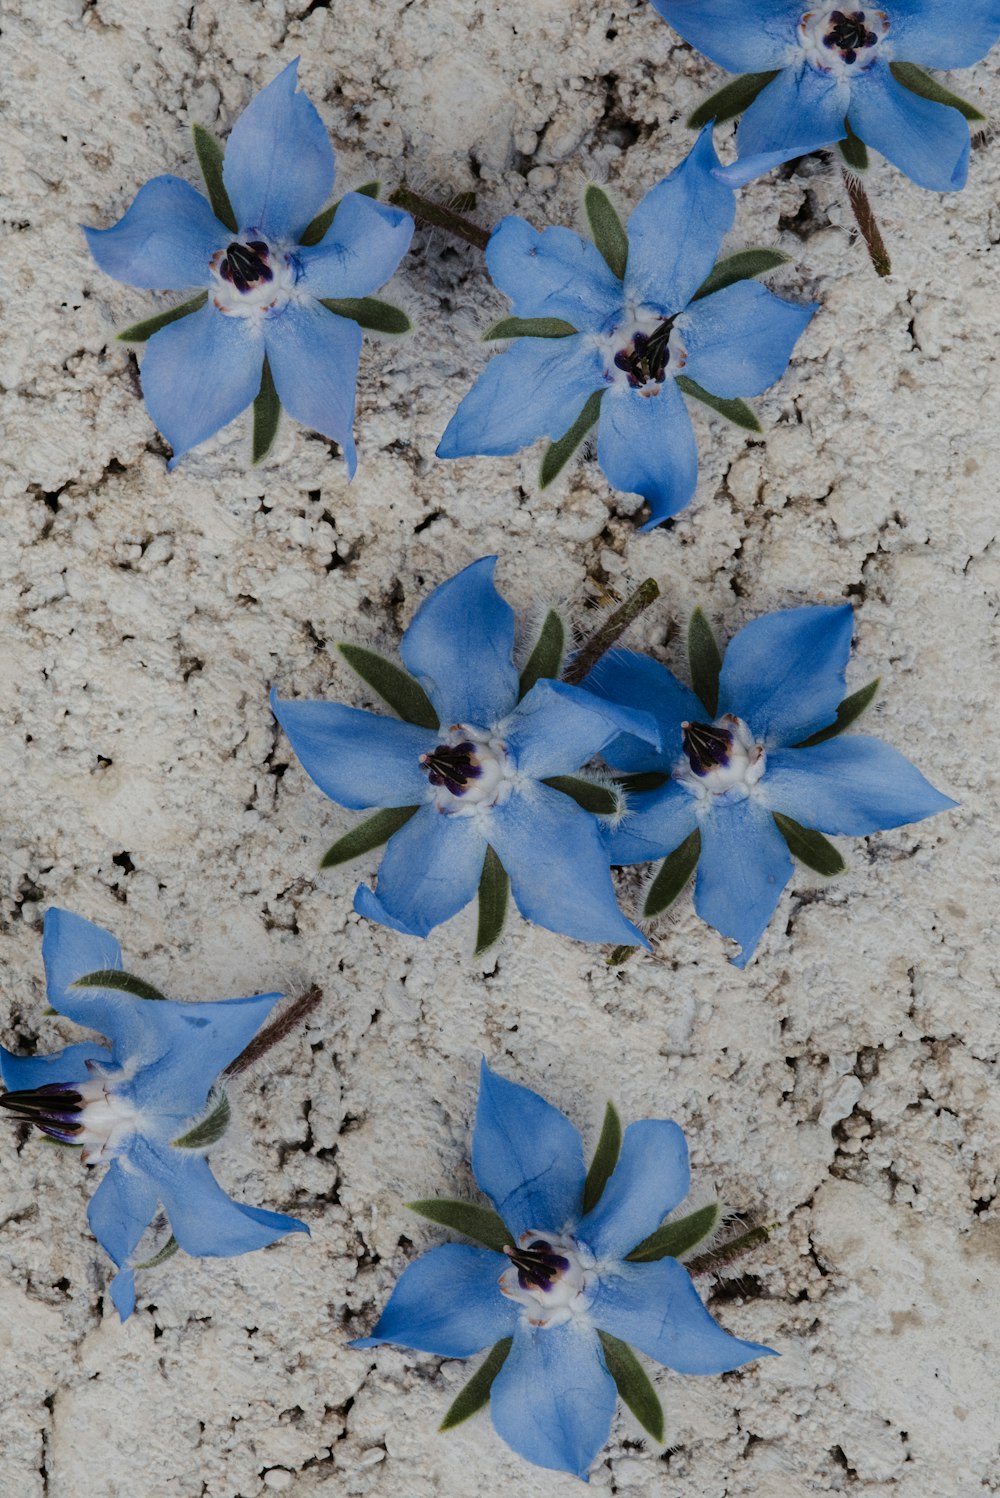 eine Gruppe blauer Blumen, die auf einem sandigen Boden sitzen